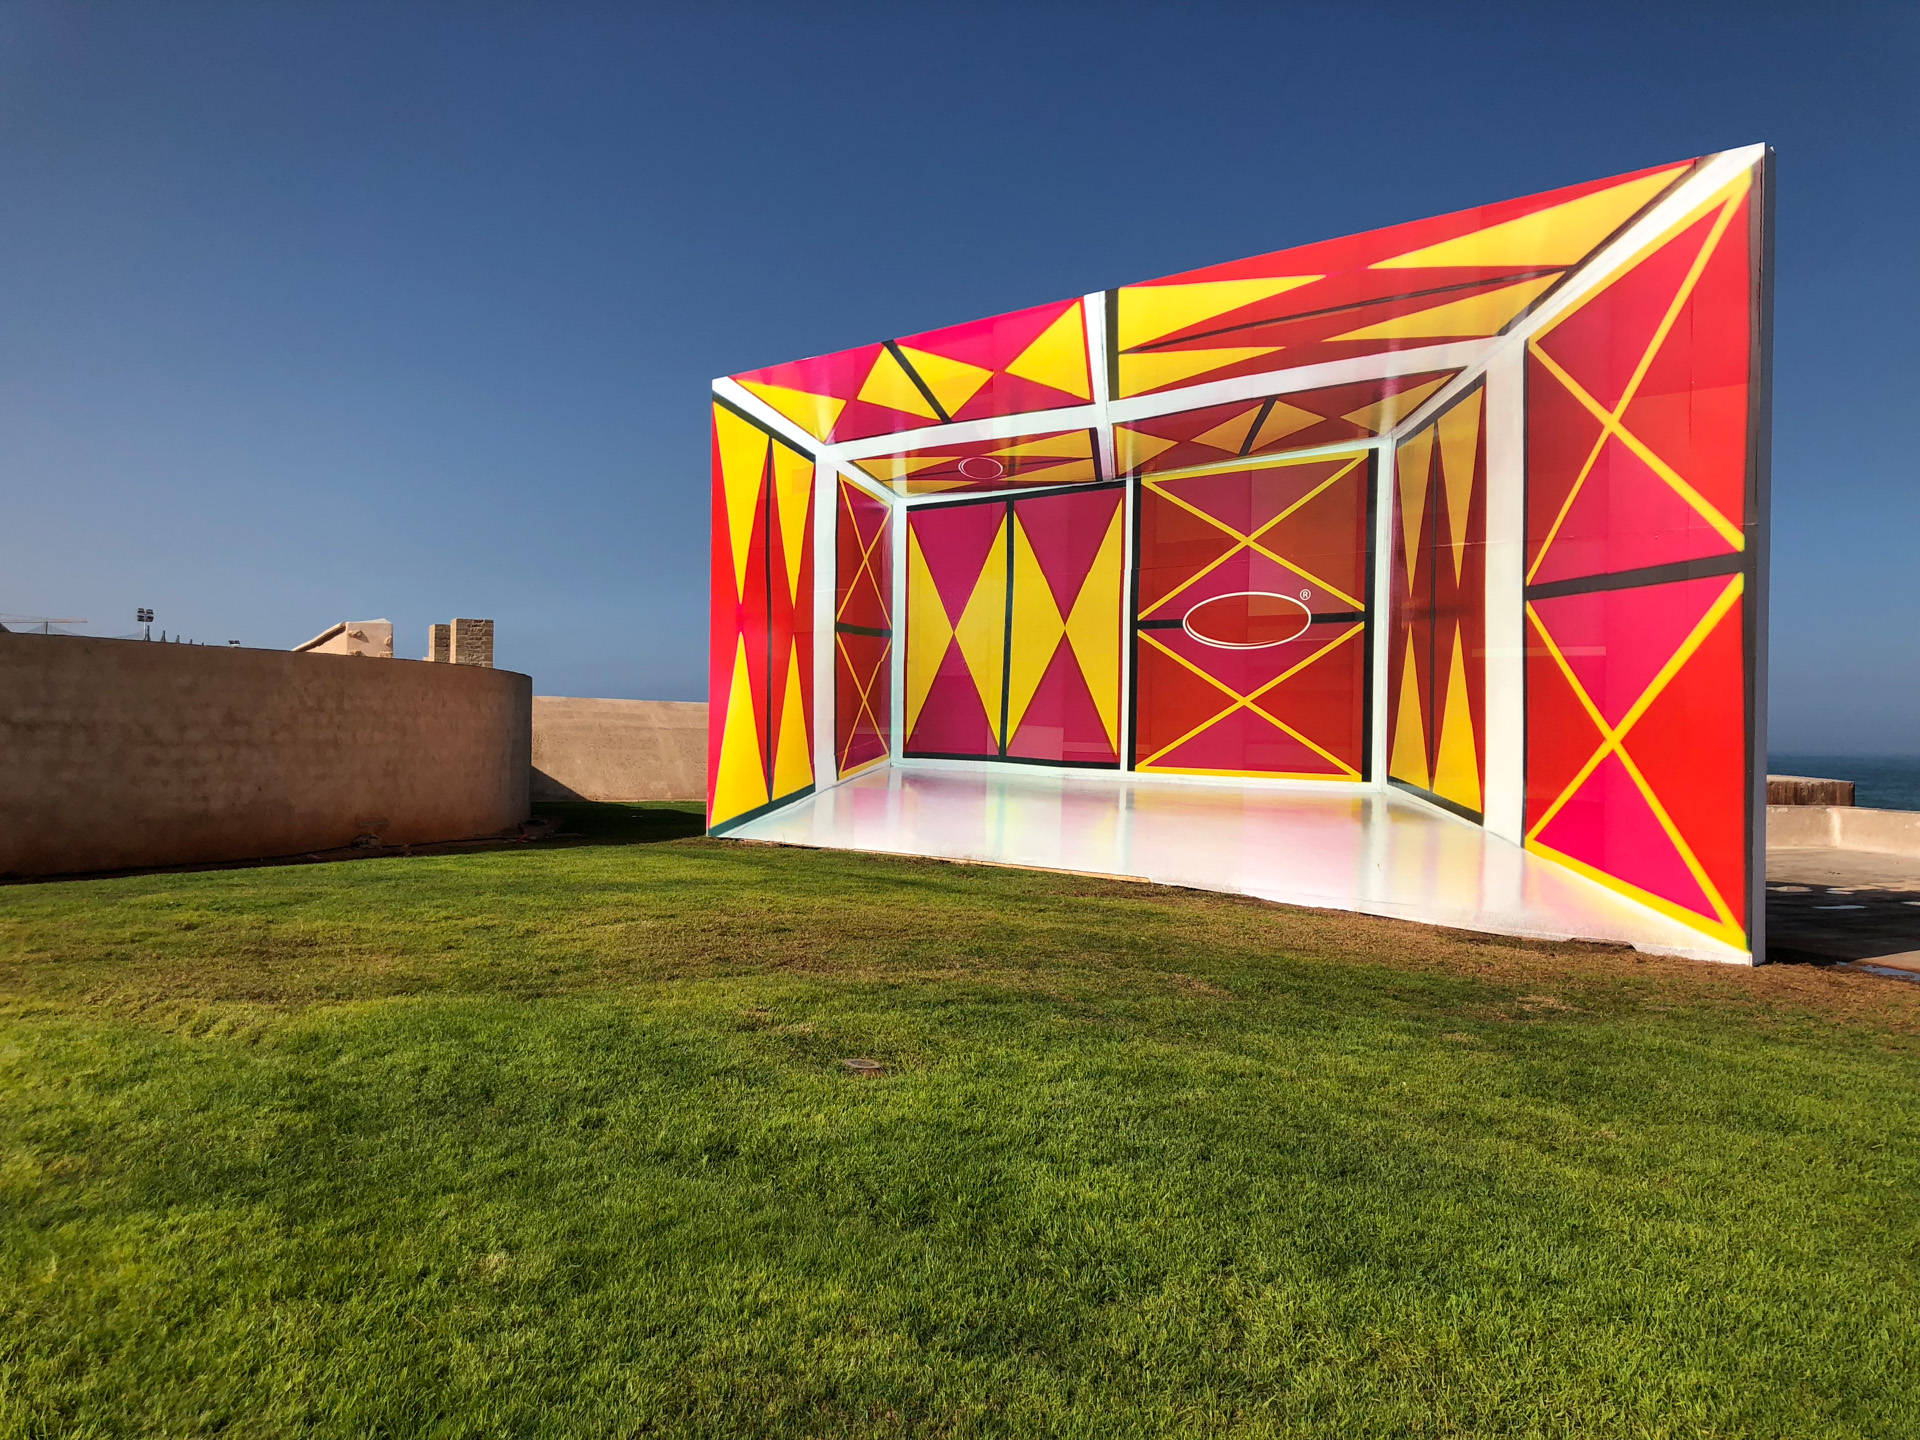 Terrain de Proximité, 2019
800 x 1500 cm
Vinil adesivado sobre painel de madeira
Rabat Biennale, 2019
